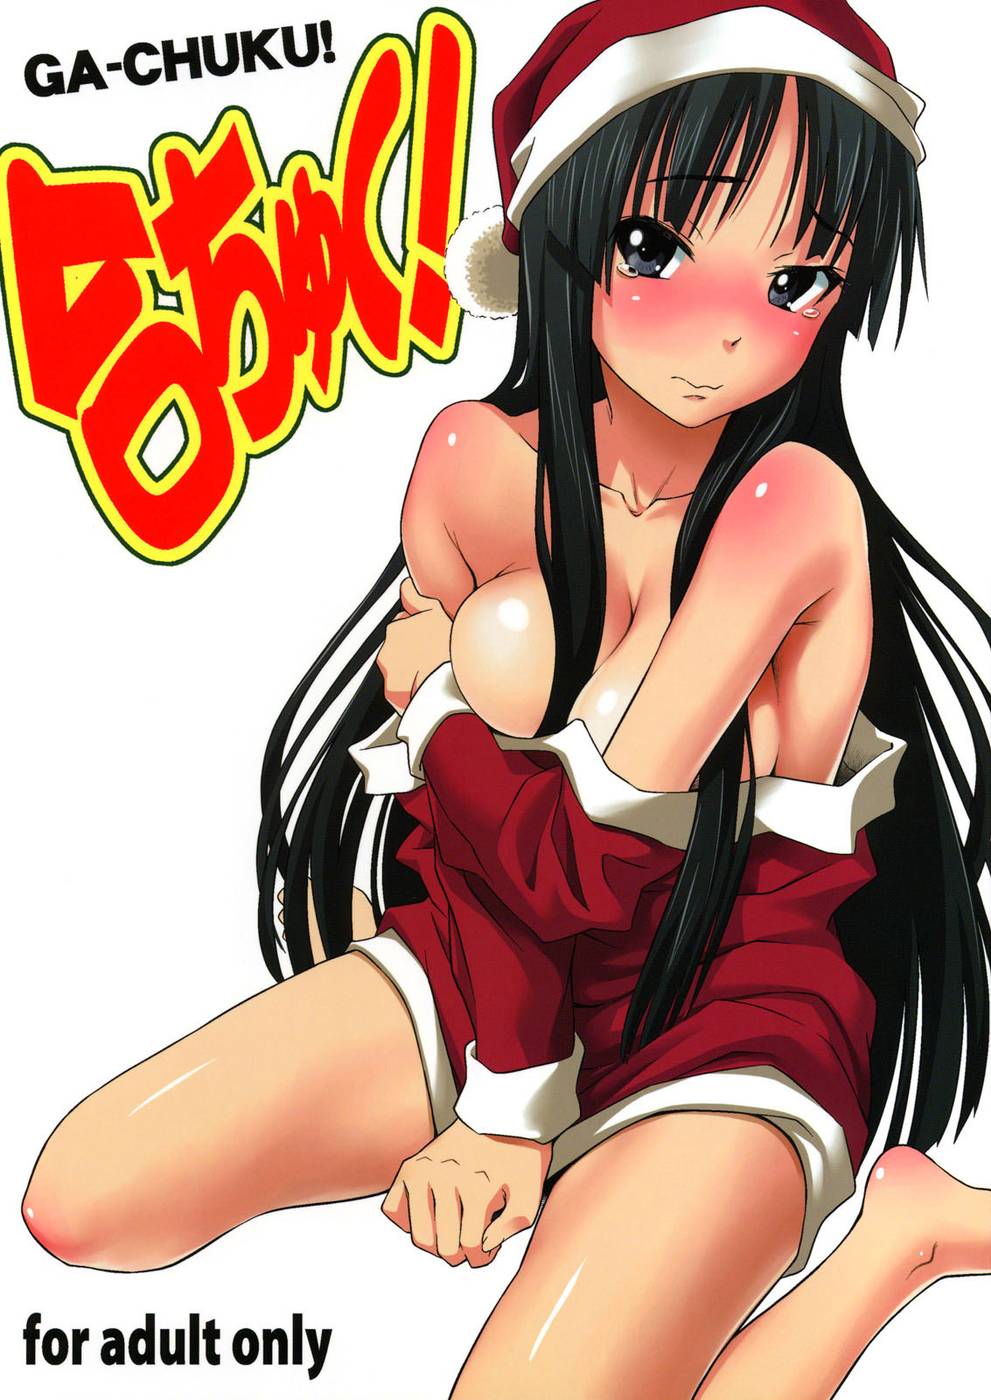 Hentai Manga Comic-Ga-chuku!-Read-1